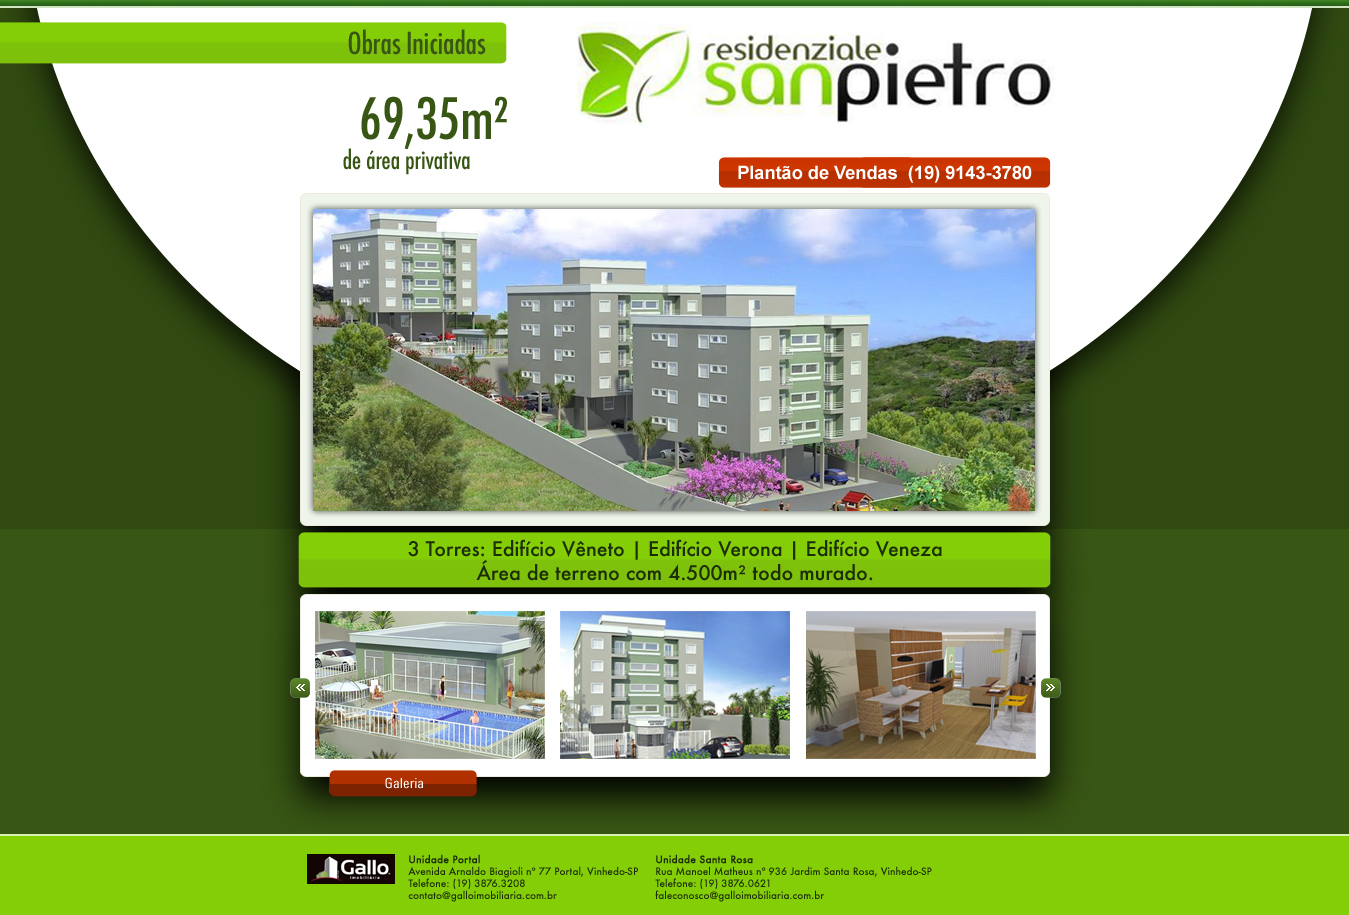 Babenko agencia publicidade - Hotsite SanPietro